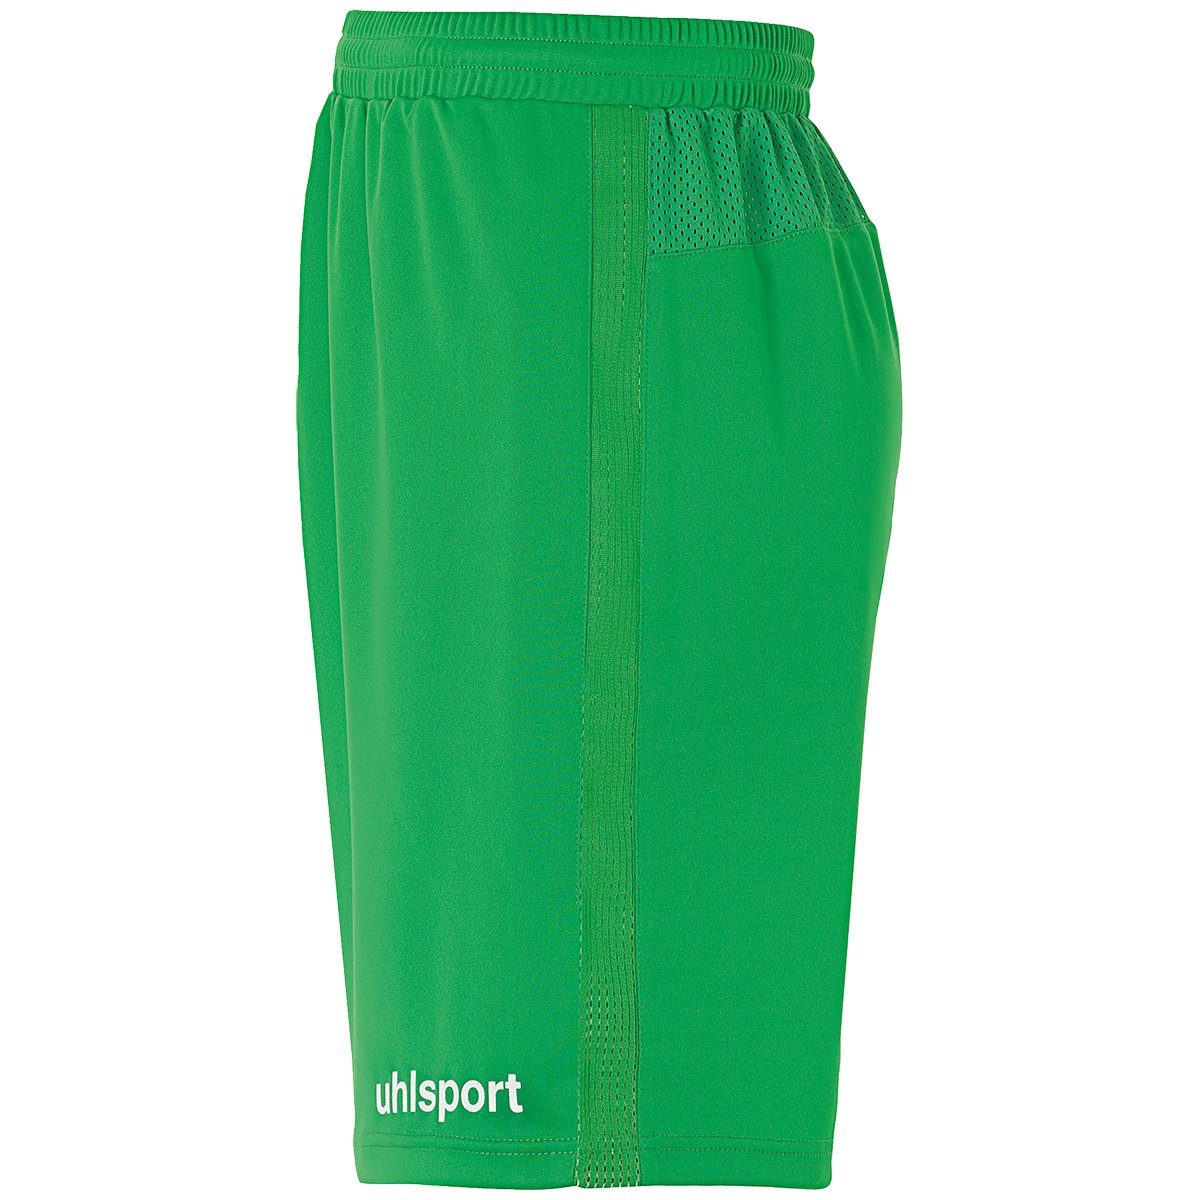 uhlsport Shorts uhlsport Shorts grün/weiß PERFORMANCE SHORTS